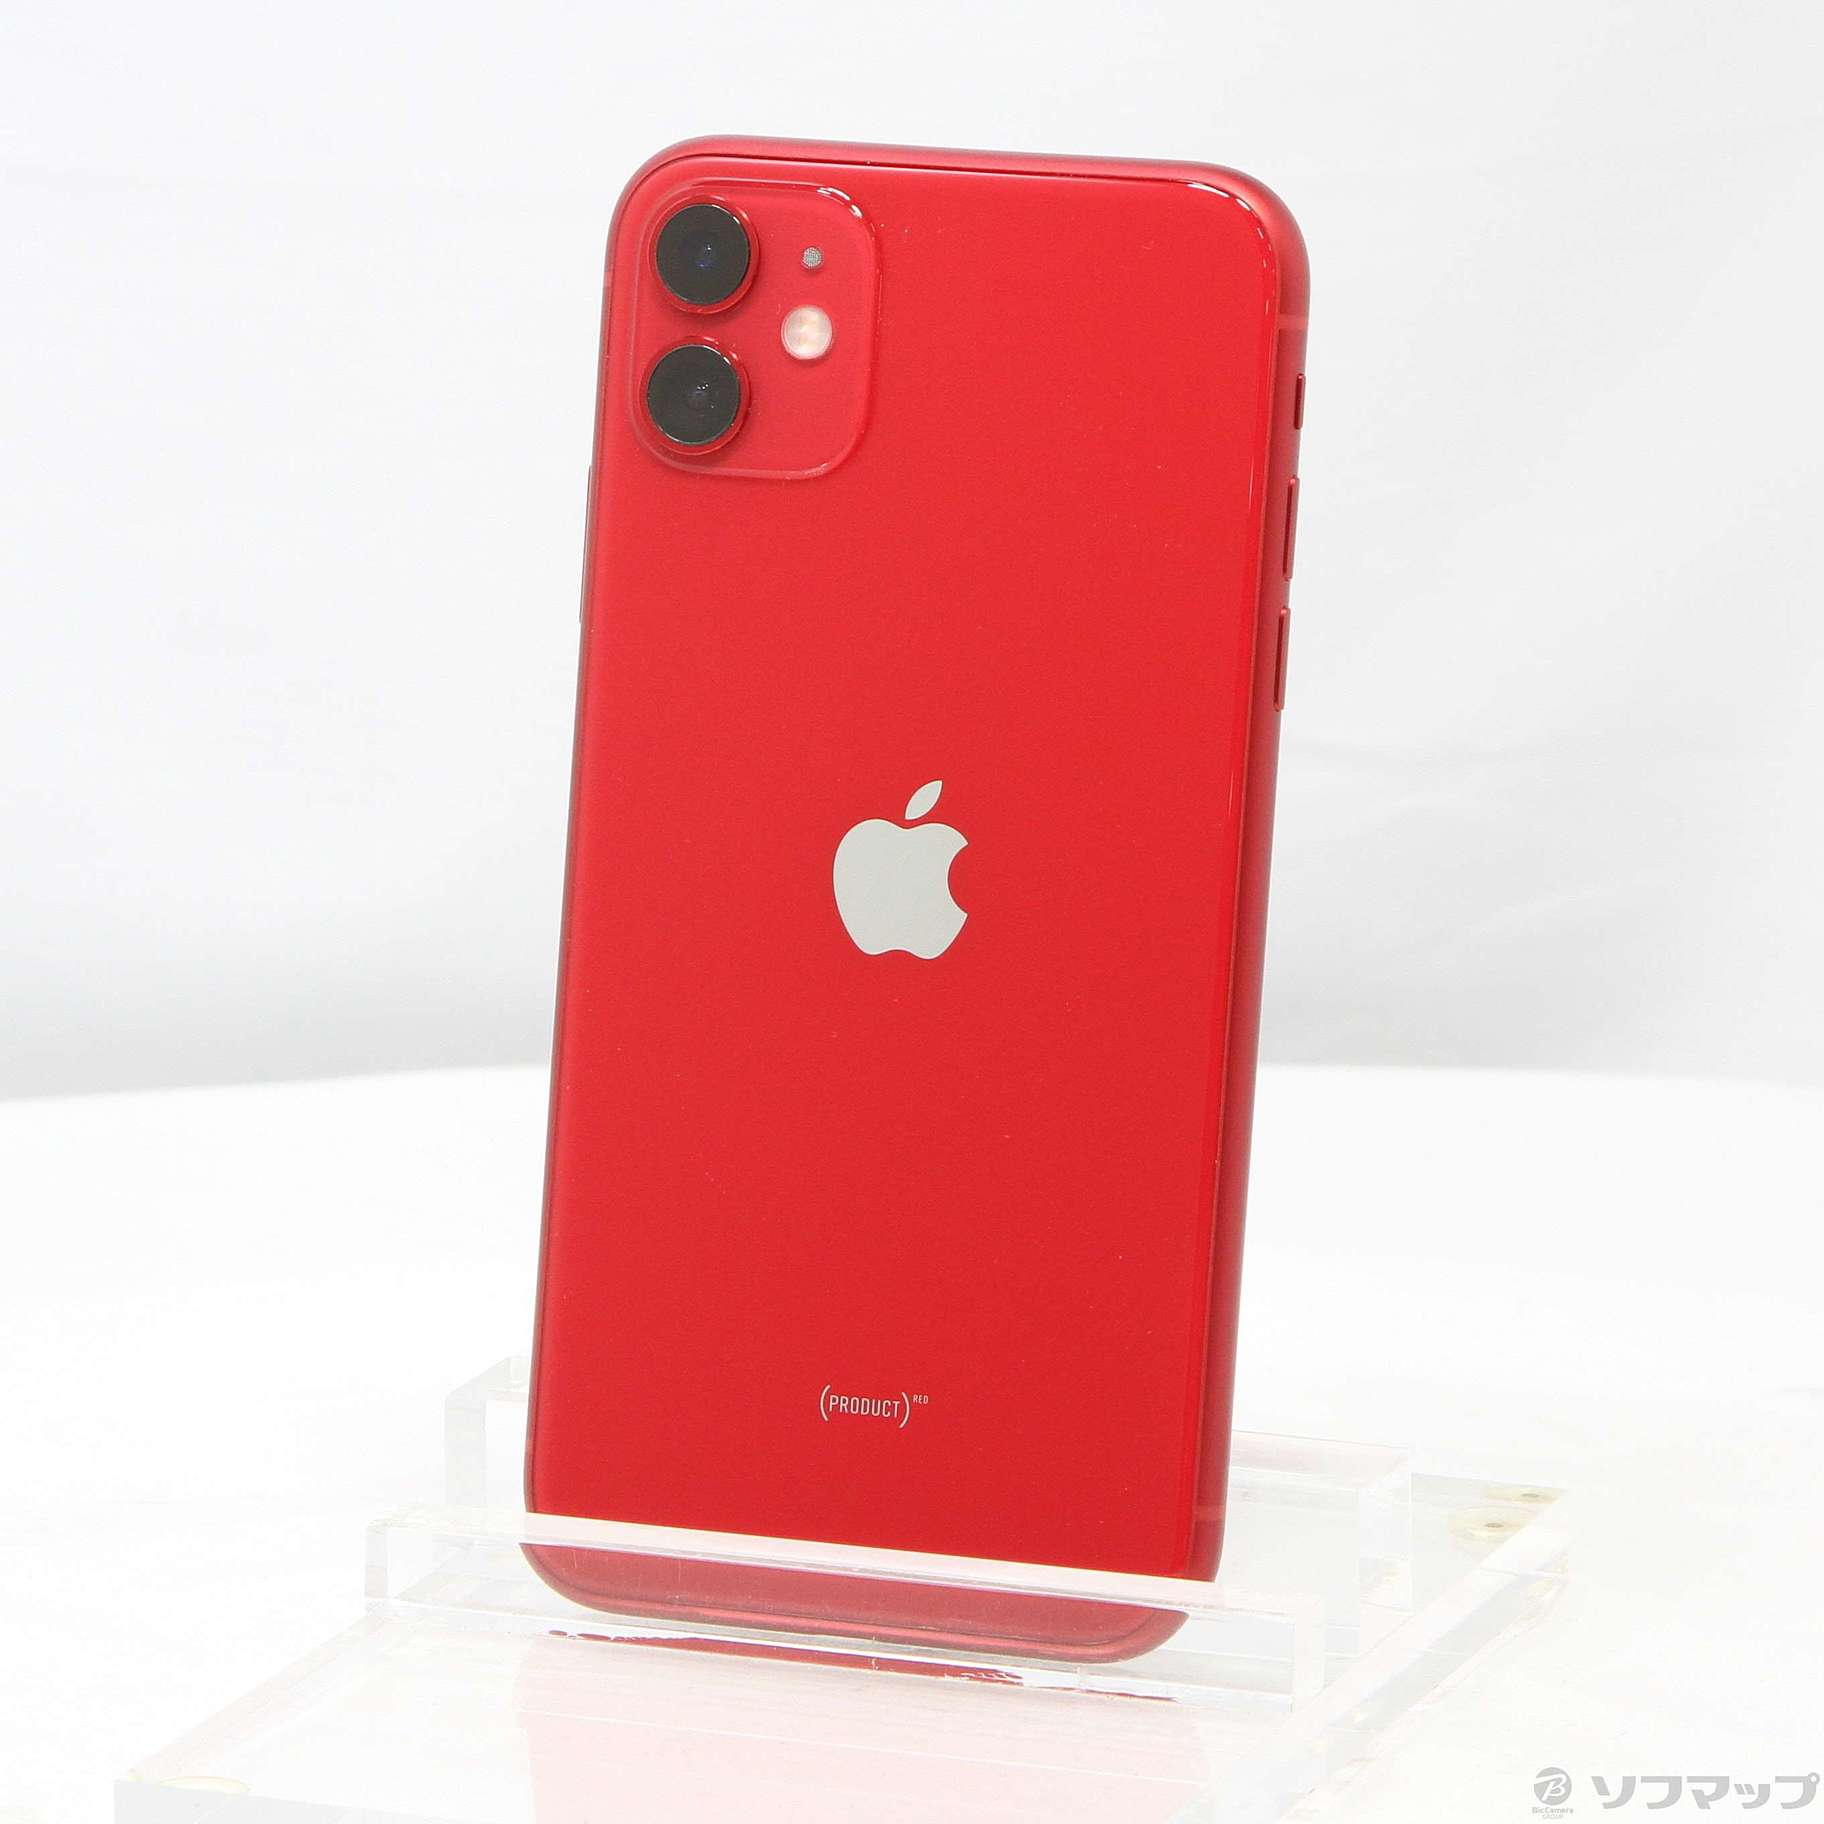 11,730円iPhone 11 (PRODUCT)RED 64GB SIMフリー